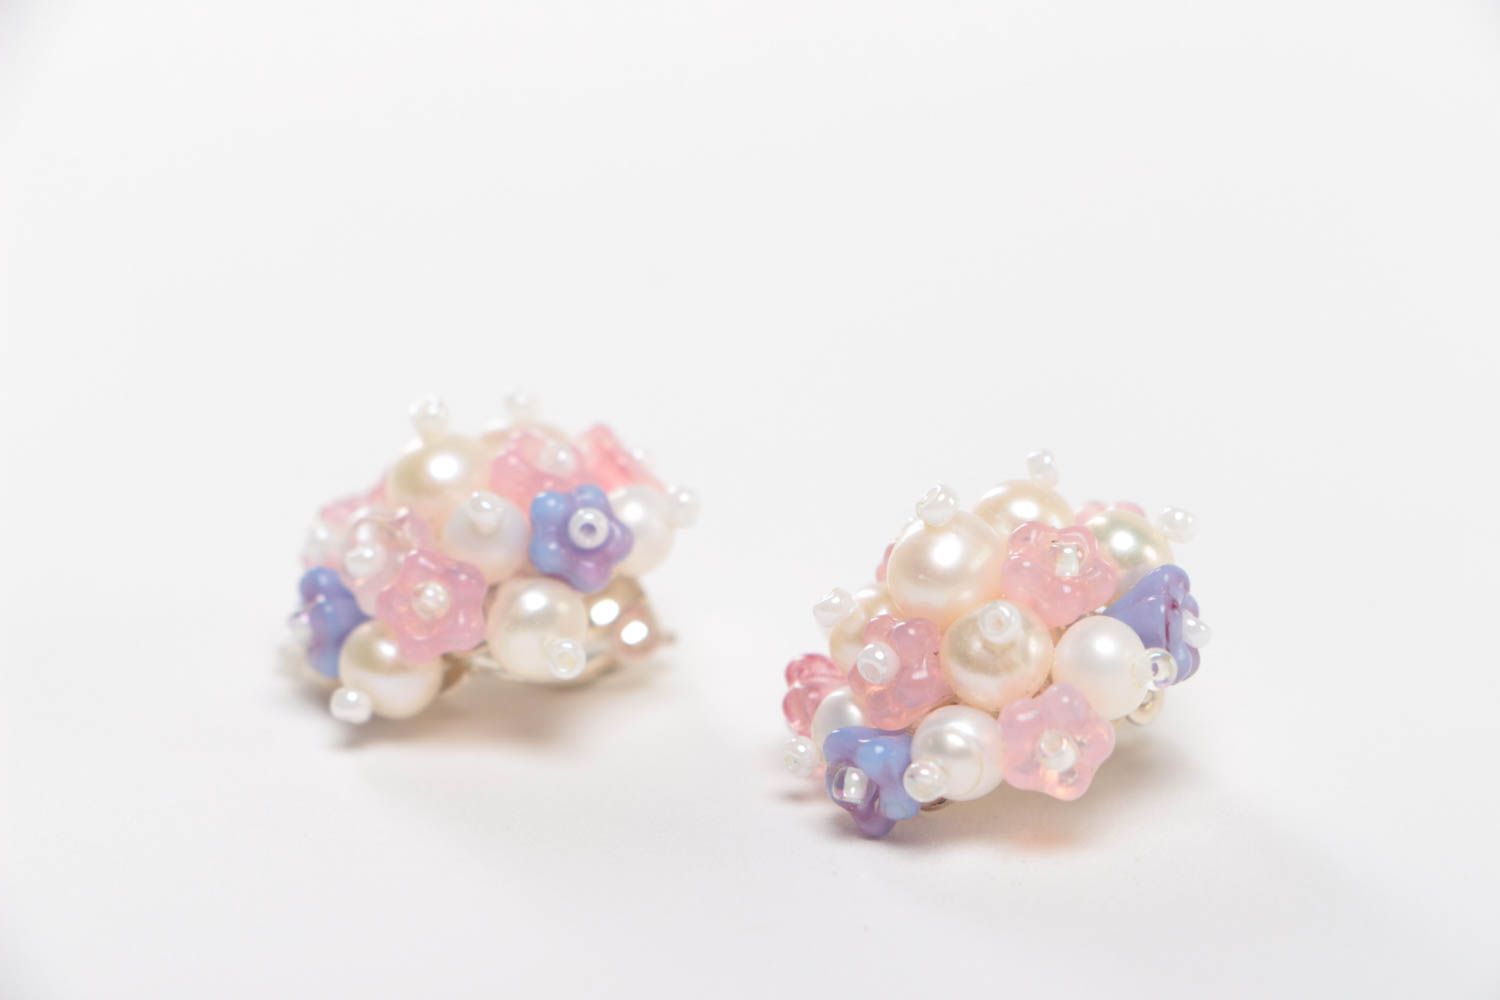 Handmade earrings designer earrings for girl unusual gift stone jewelry photo 3